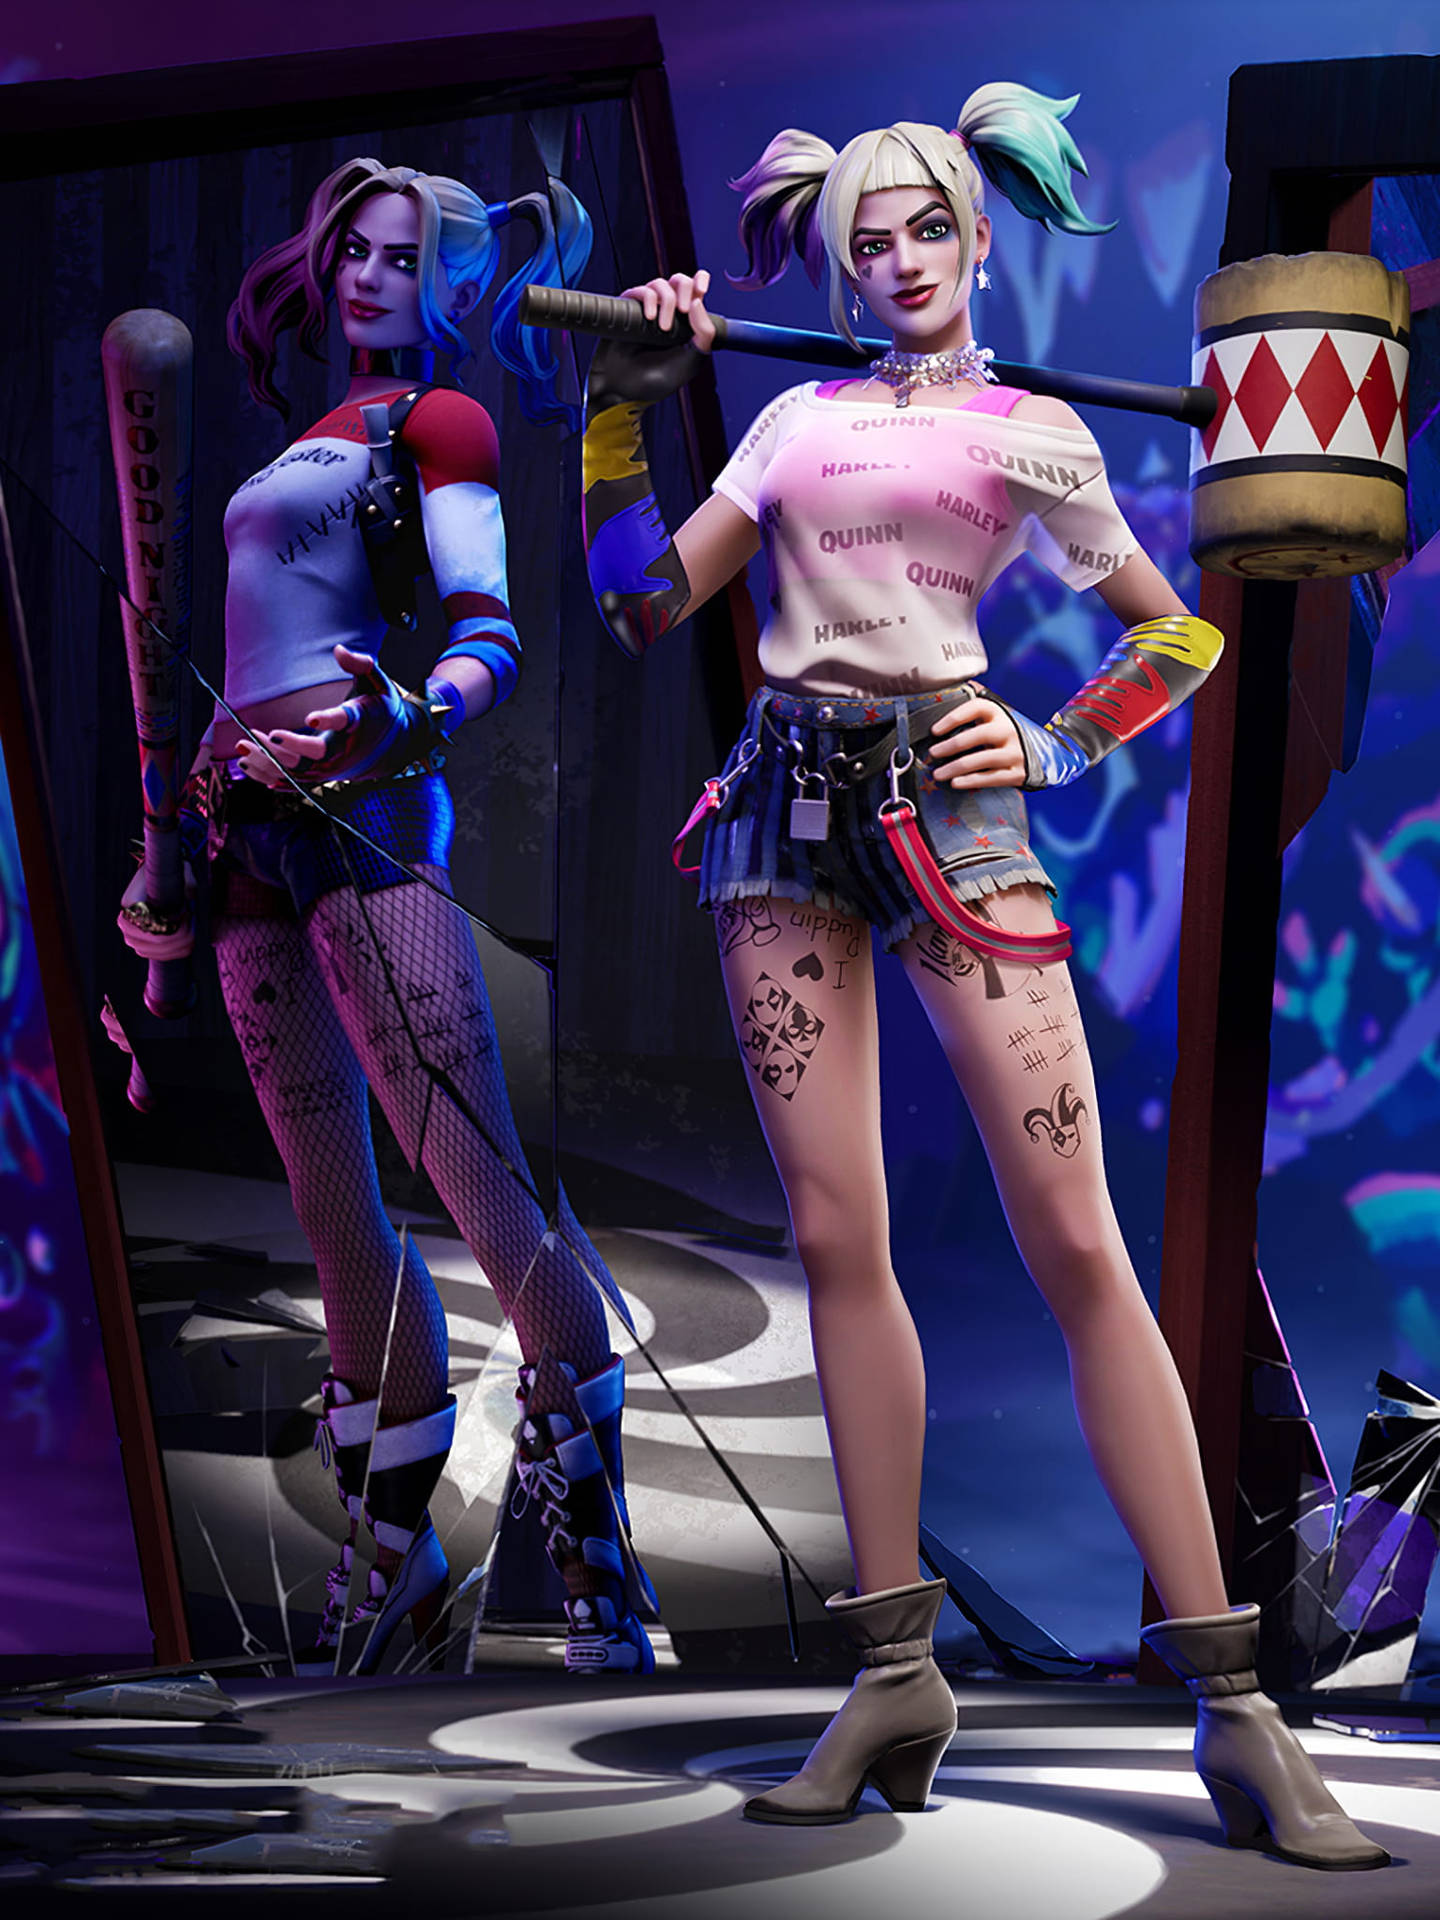 Fortniteprofilbild Harley Quinn Set. Wallpaper